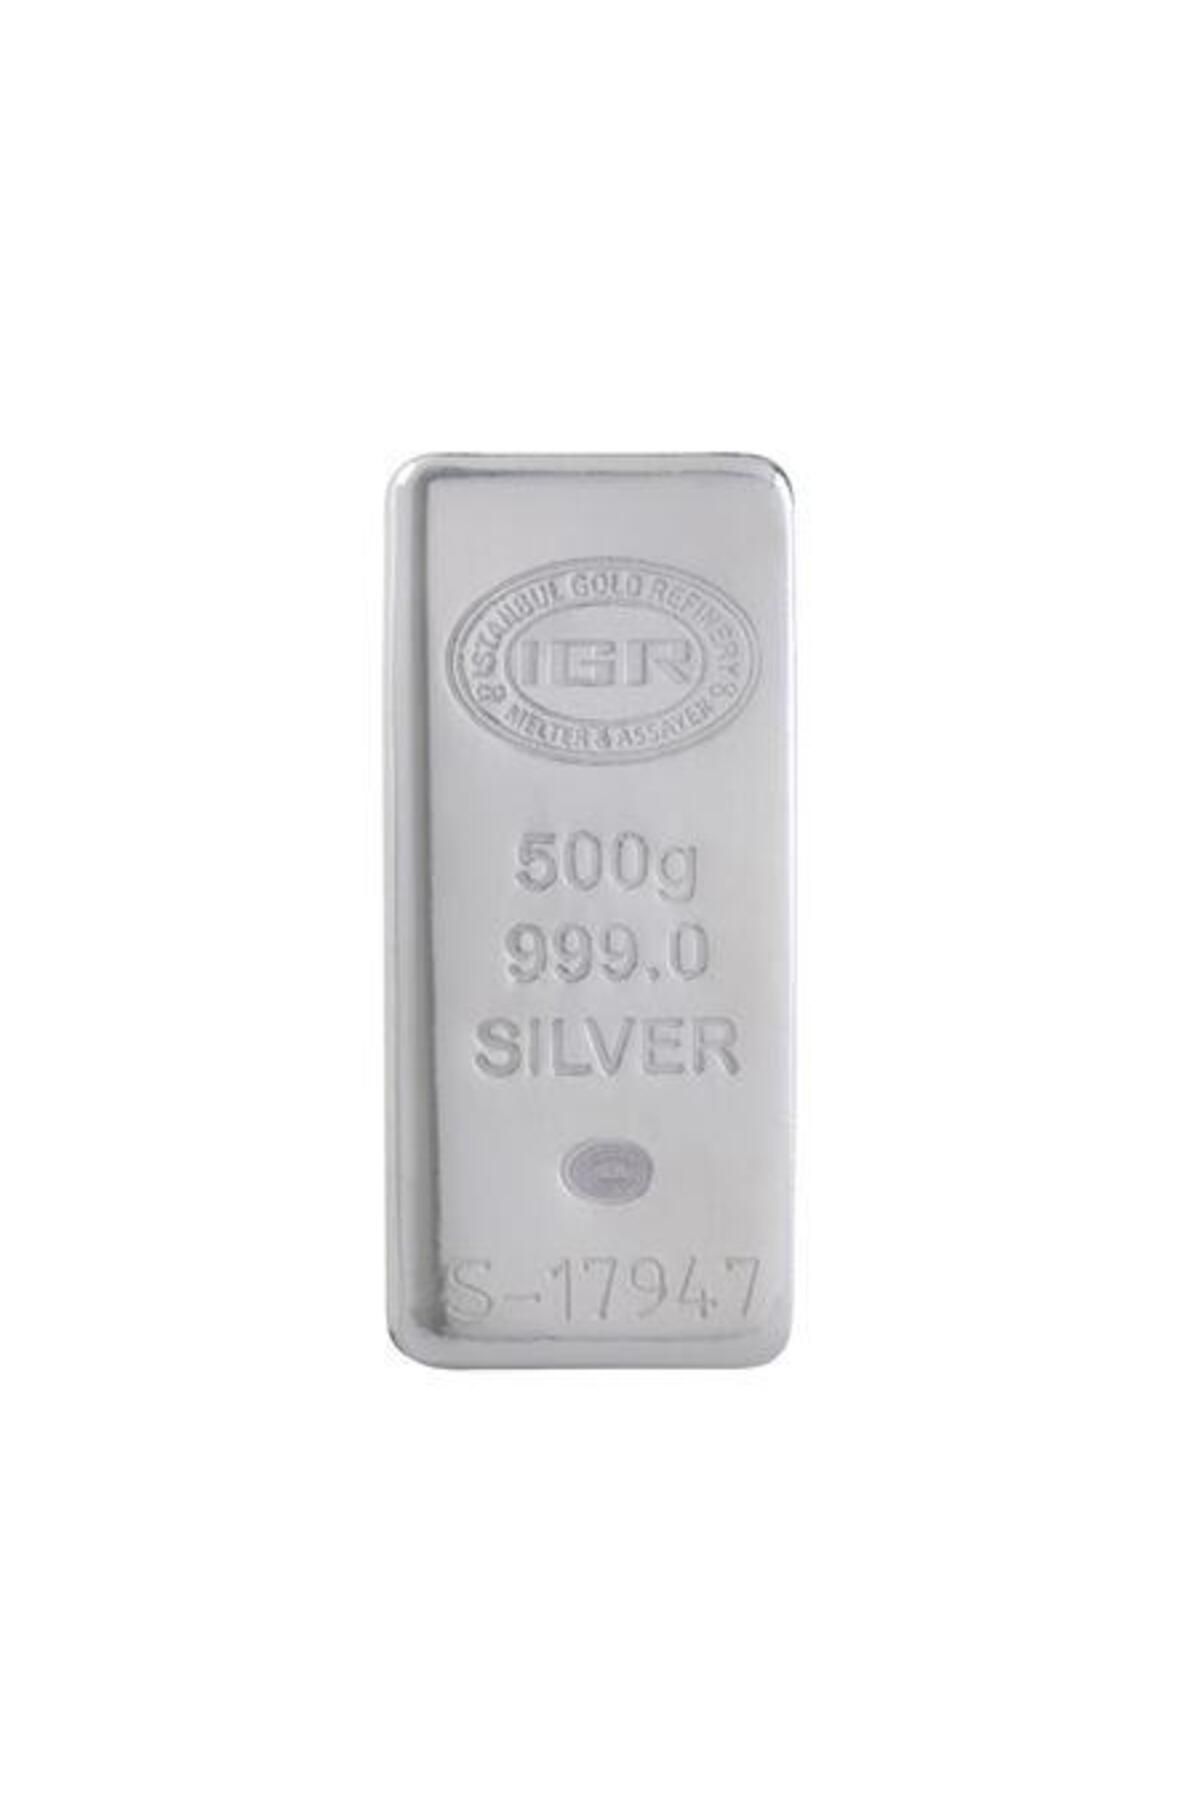 İar Agakulche Iar 500 gram Külçe Gümüş 999.0 Saflıkta